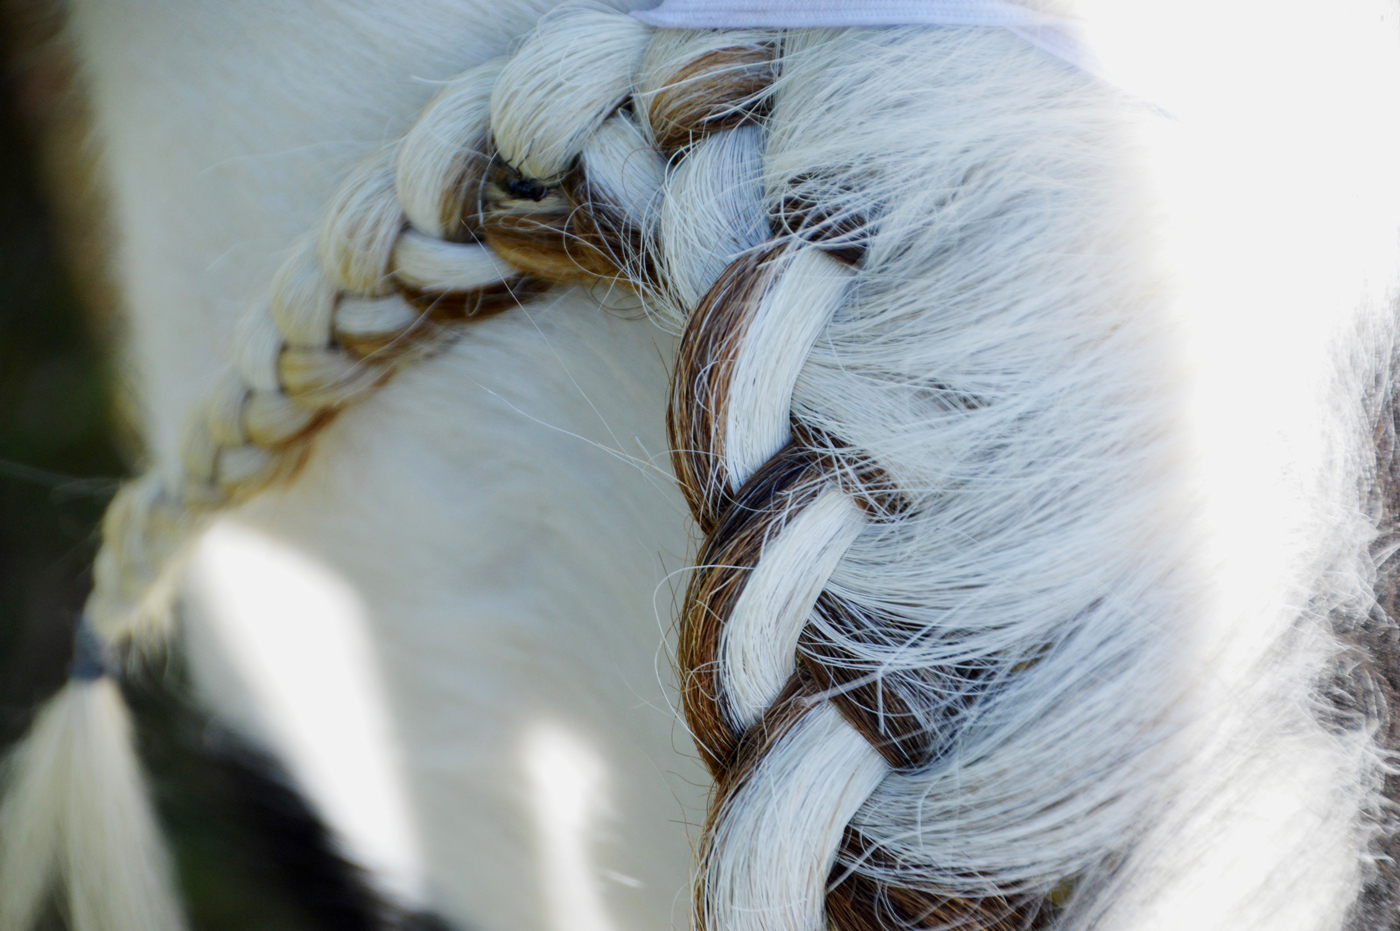 A horses mane in braids